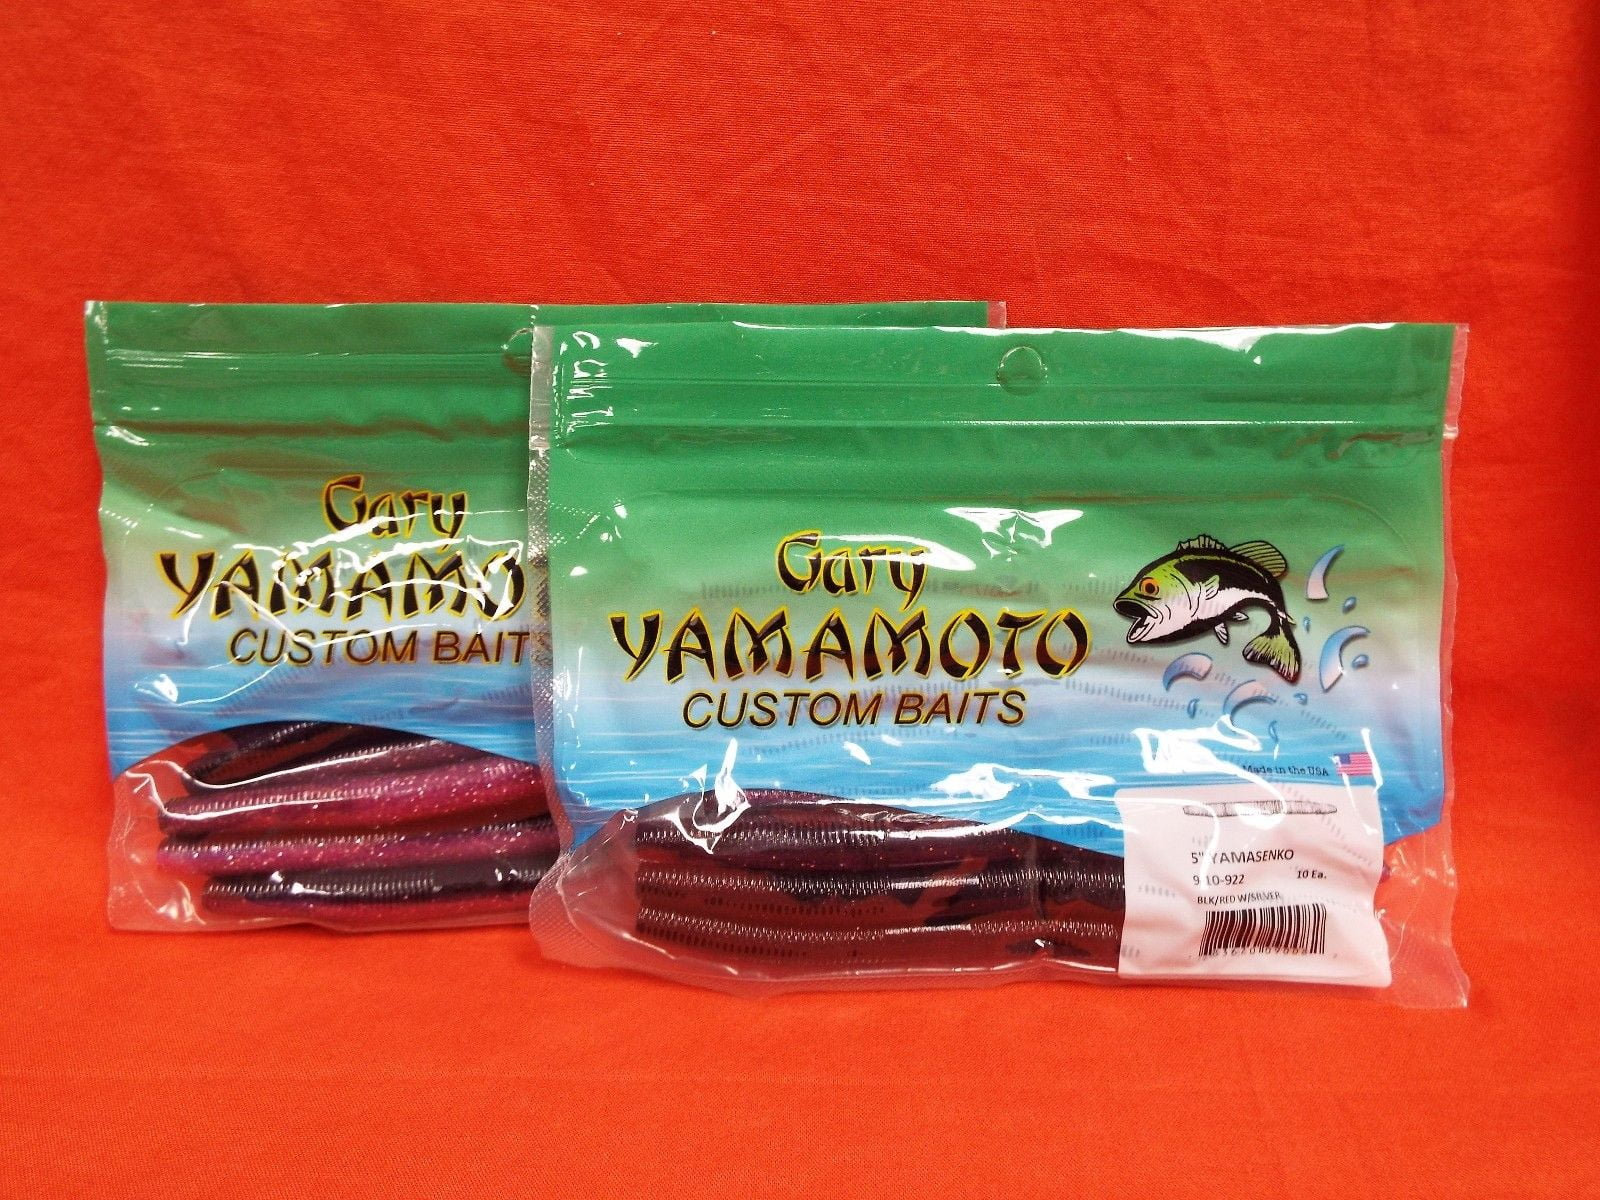 Gary Yamamoto Custom Baits 5 Senko Worm, Green Pumpkin with Red Flake 